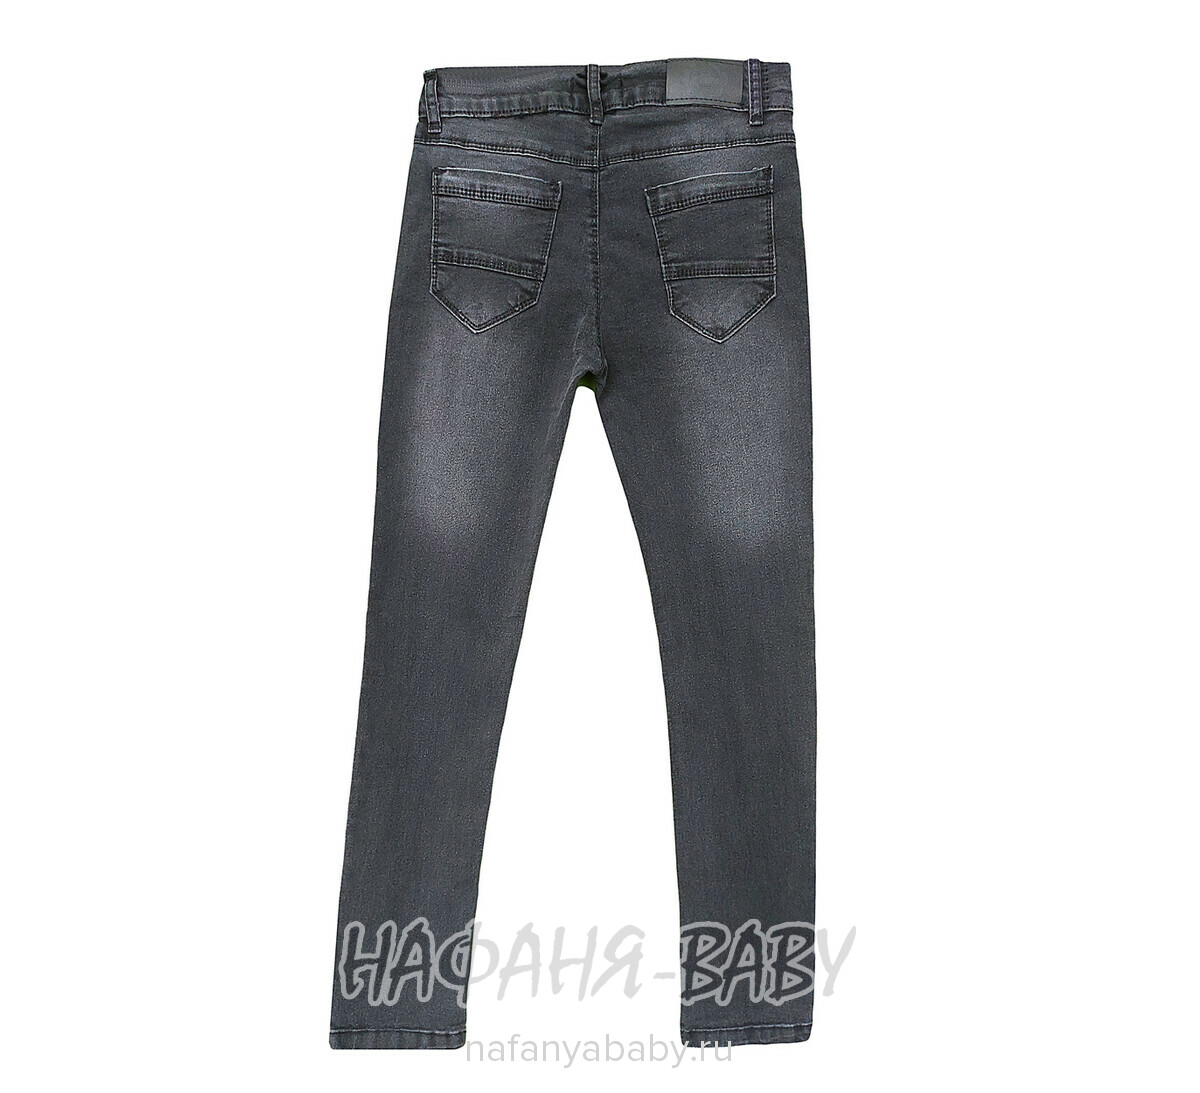 Подростковые джинсы TATI Jeans  арт: 5612, 13-17 лет, цвет черный, оптом Турция